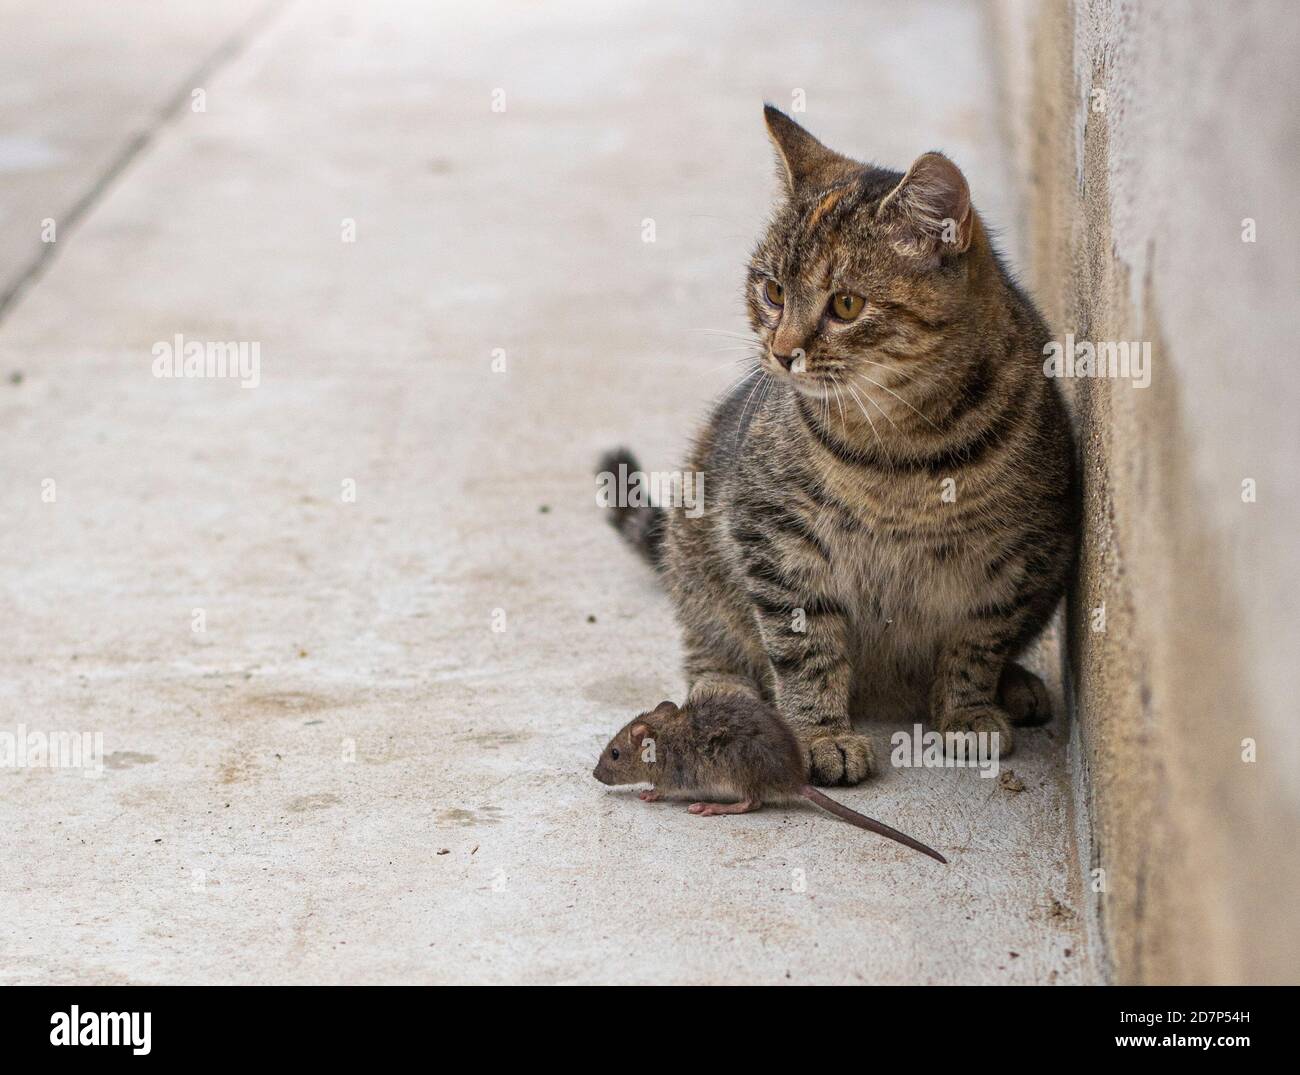 Eine Maus (Mus musculus), die vor der grau gekleideten jungen Katze steht. Graue Katze mit der Maus. Betonhof im Hintergrund. Stockfoto